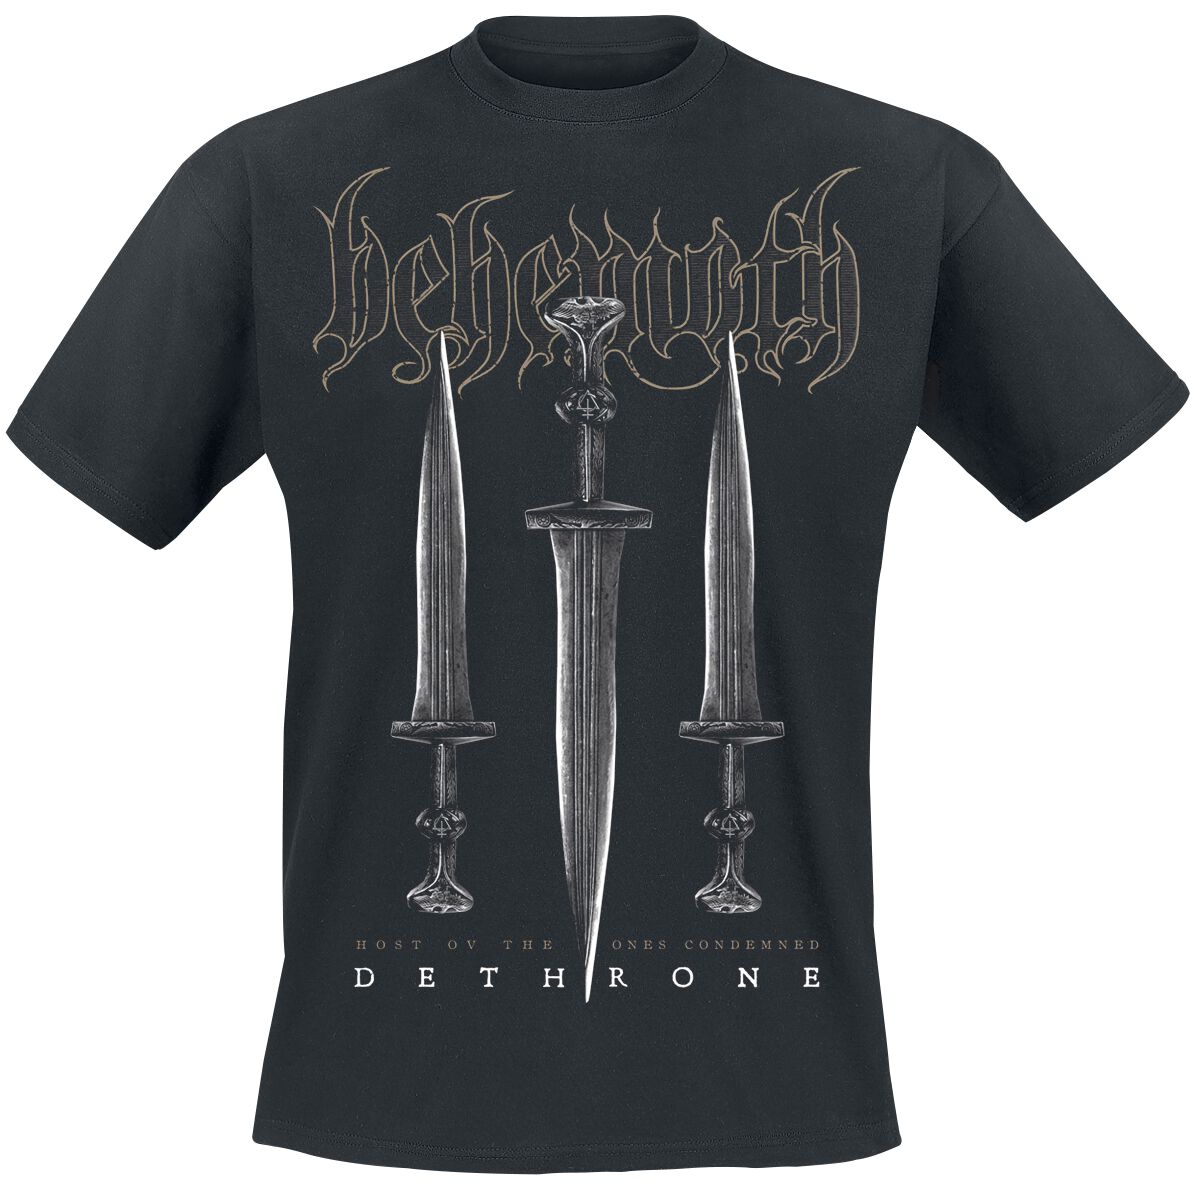 Behemoth T-Shirt - Dethrone - S bis 4XL - für Männer - Größe S - schwarz  - Lizenziertes Merchandise!